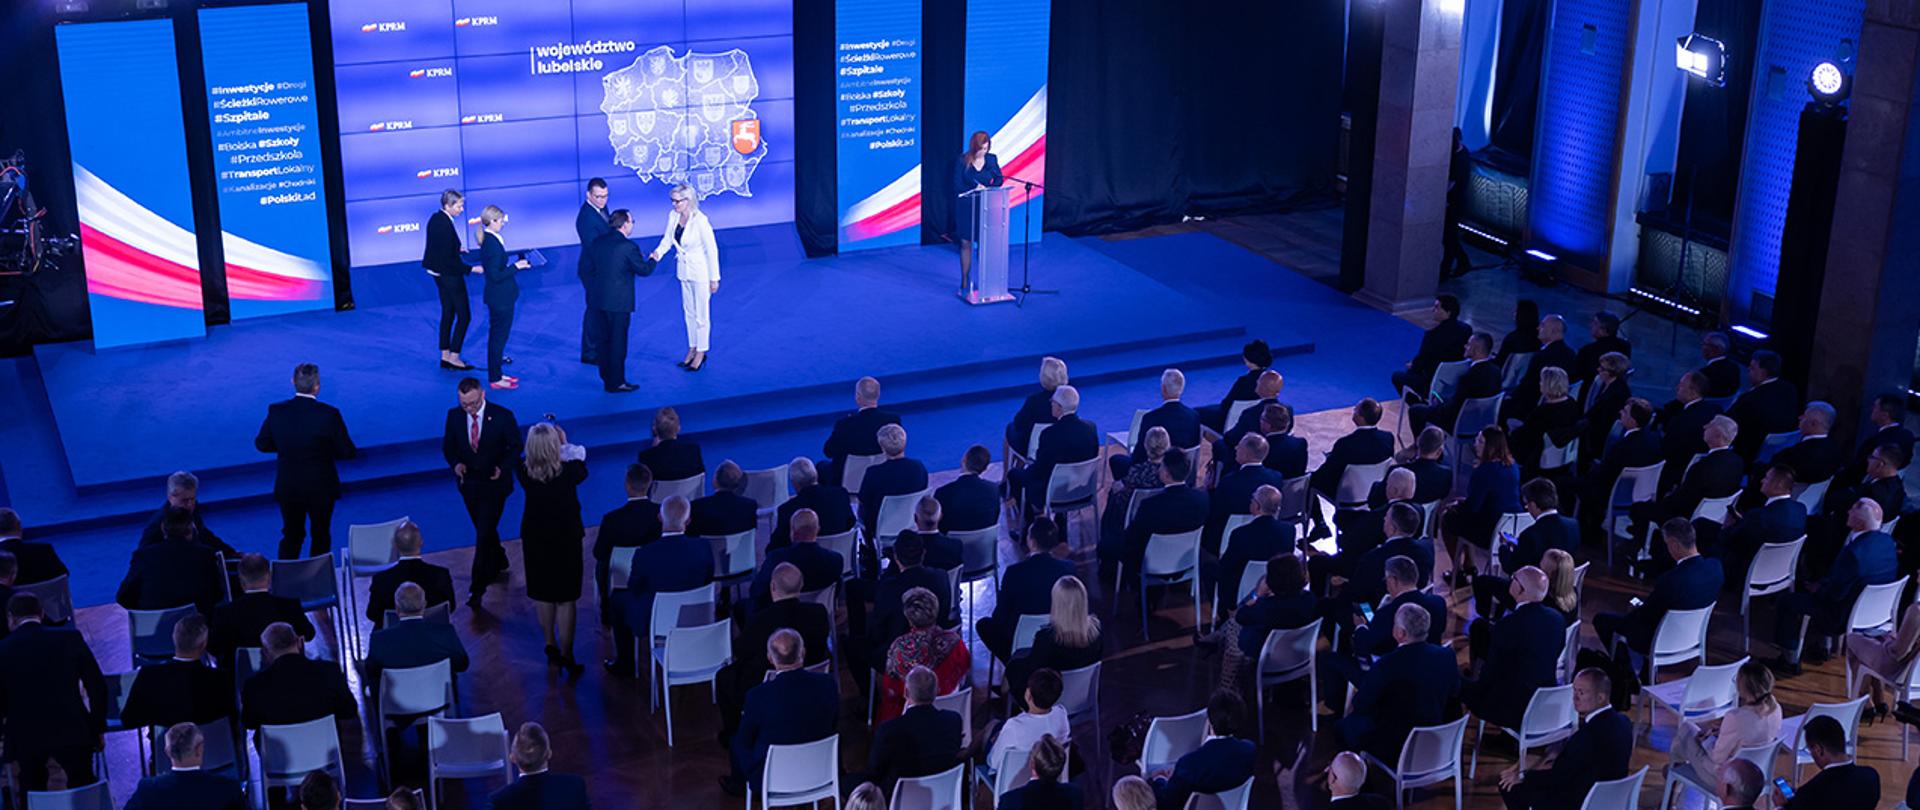 Na zdjęciu widać ministra Mariusza Kamińskiego składającego gratulacje jednej z odznaczonych osób.